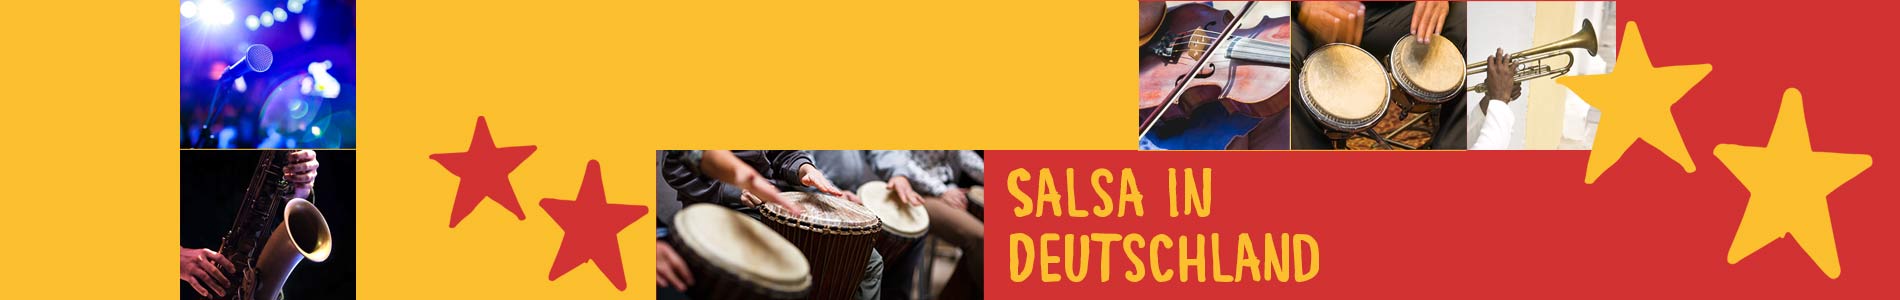 Salsa in Borgholzhausen – Salsa lernen und tanzen, Tanzkurse, Partys, Veranstaltungen